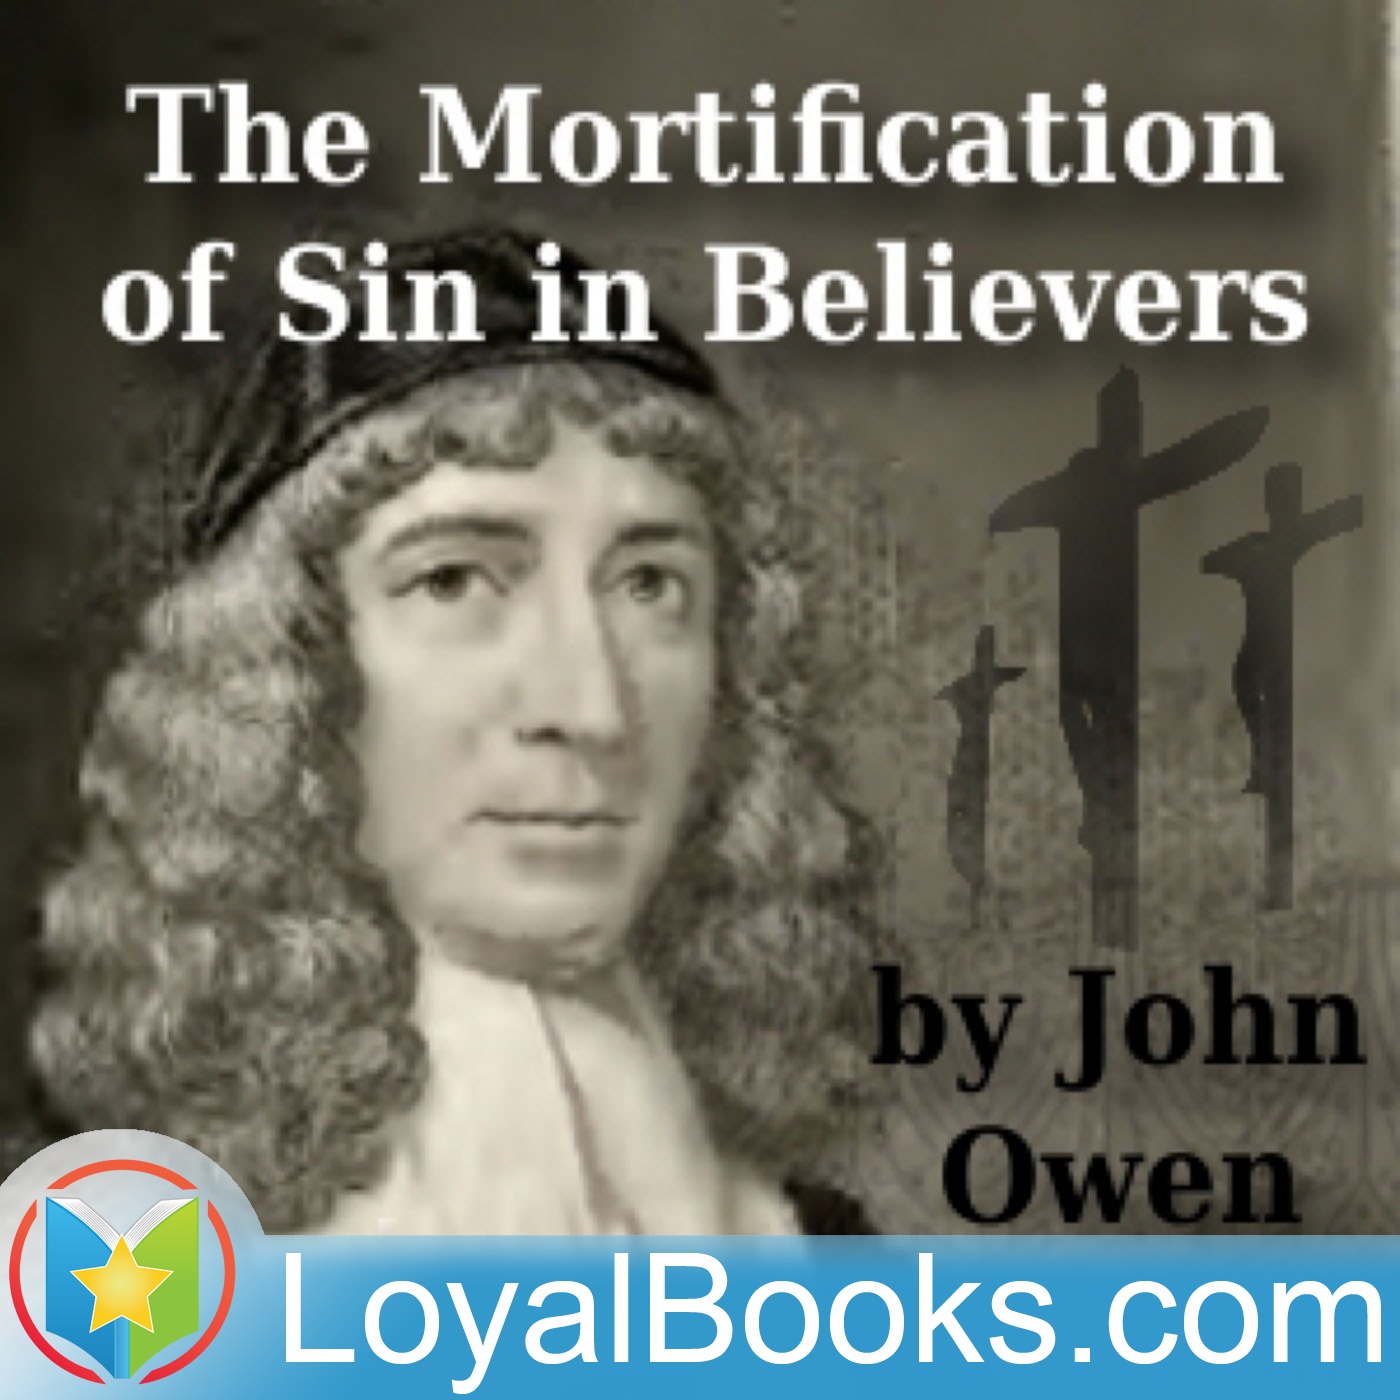 The Mortification of Sin in Believers by John Owen